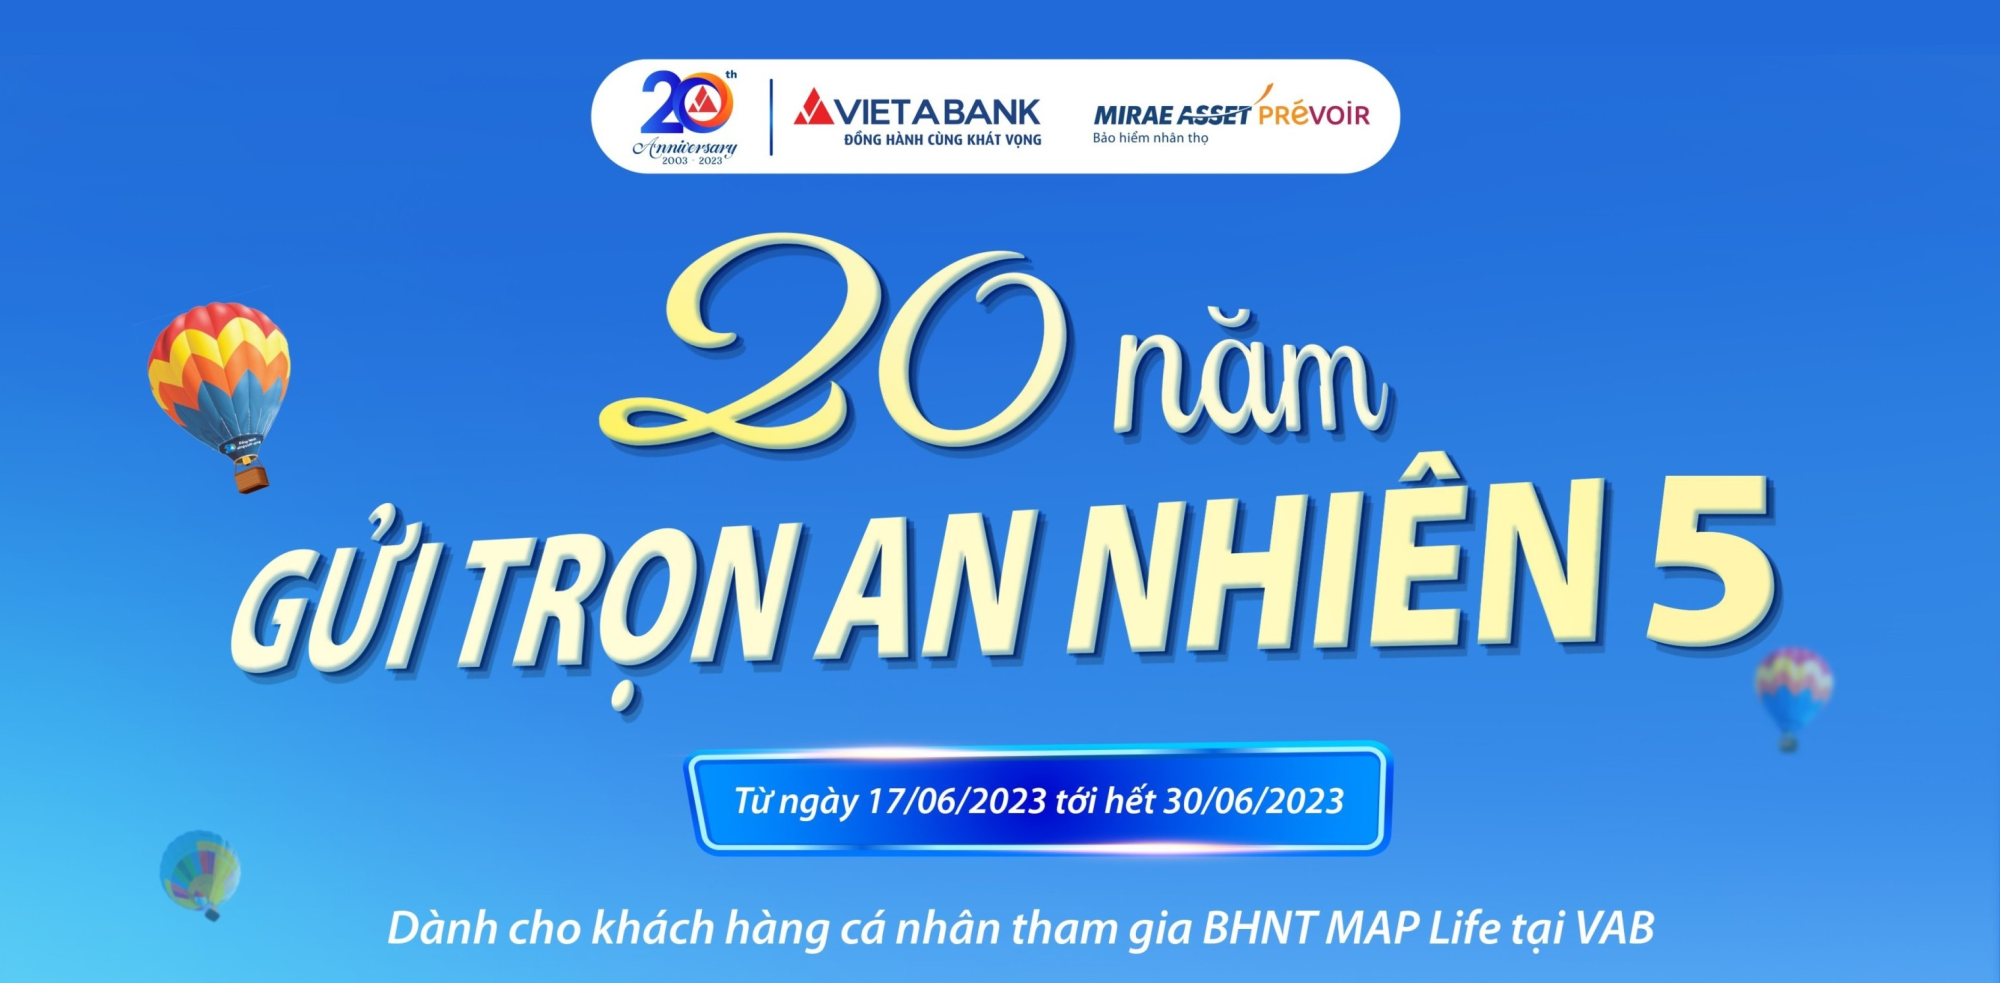 [BHNT] VietABank triển khai chương trình Gửi trọn an nhiên 5